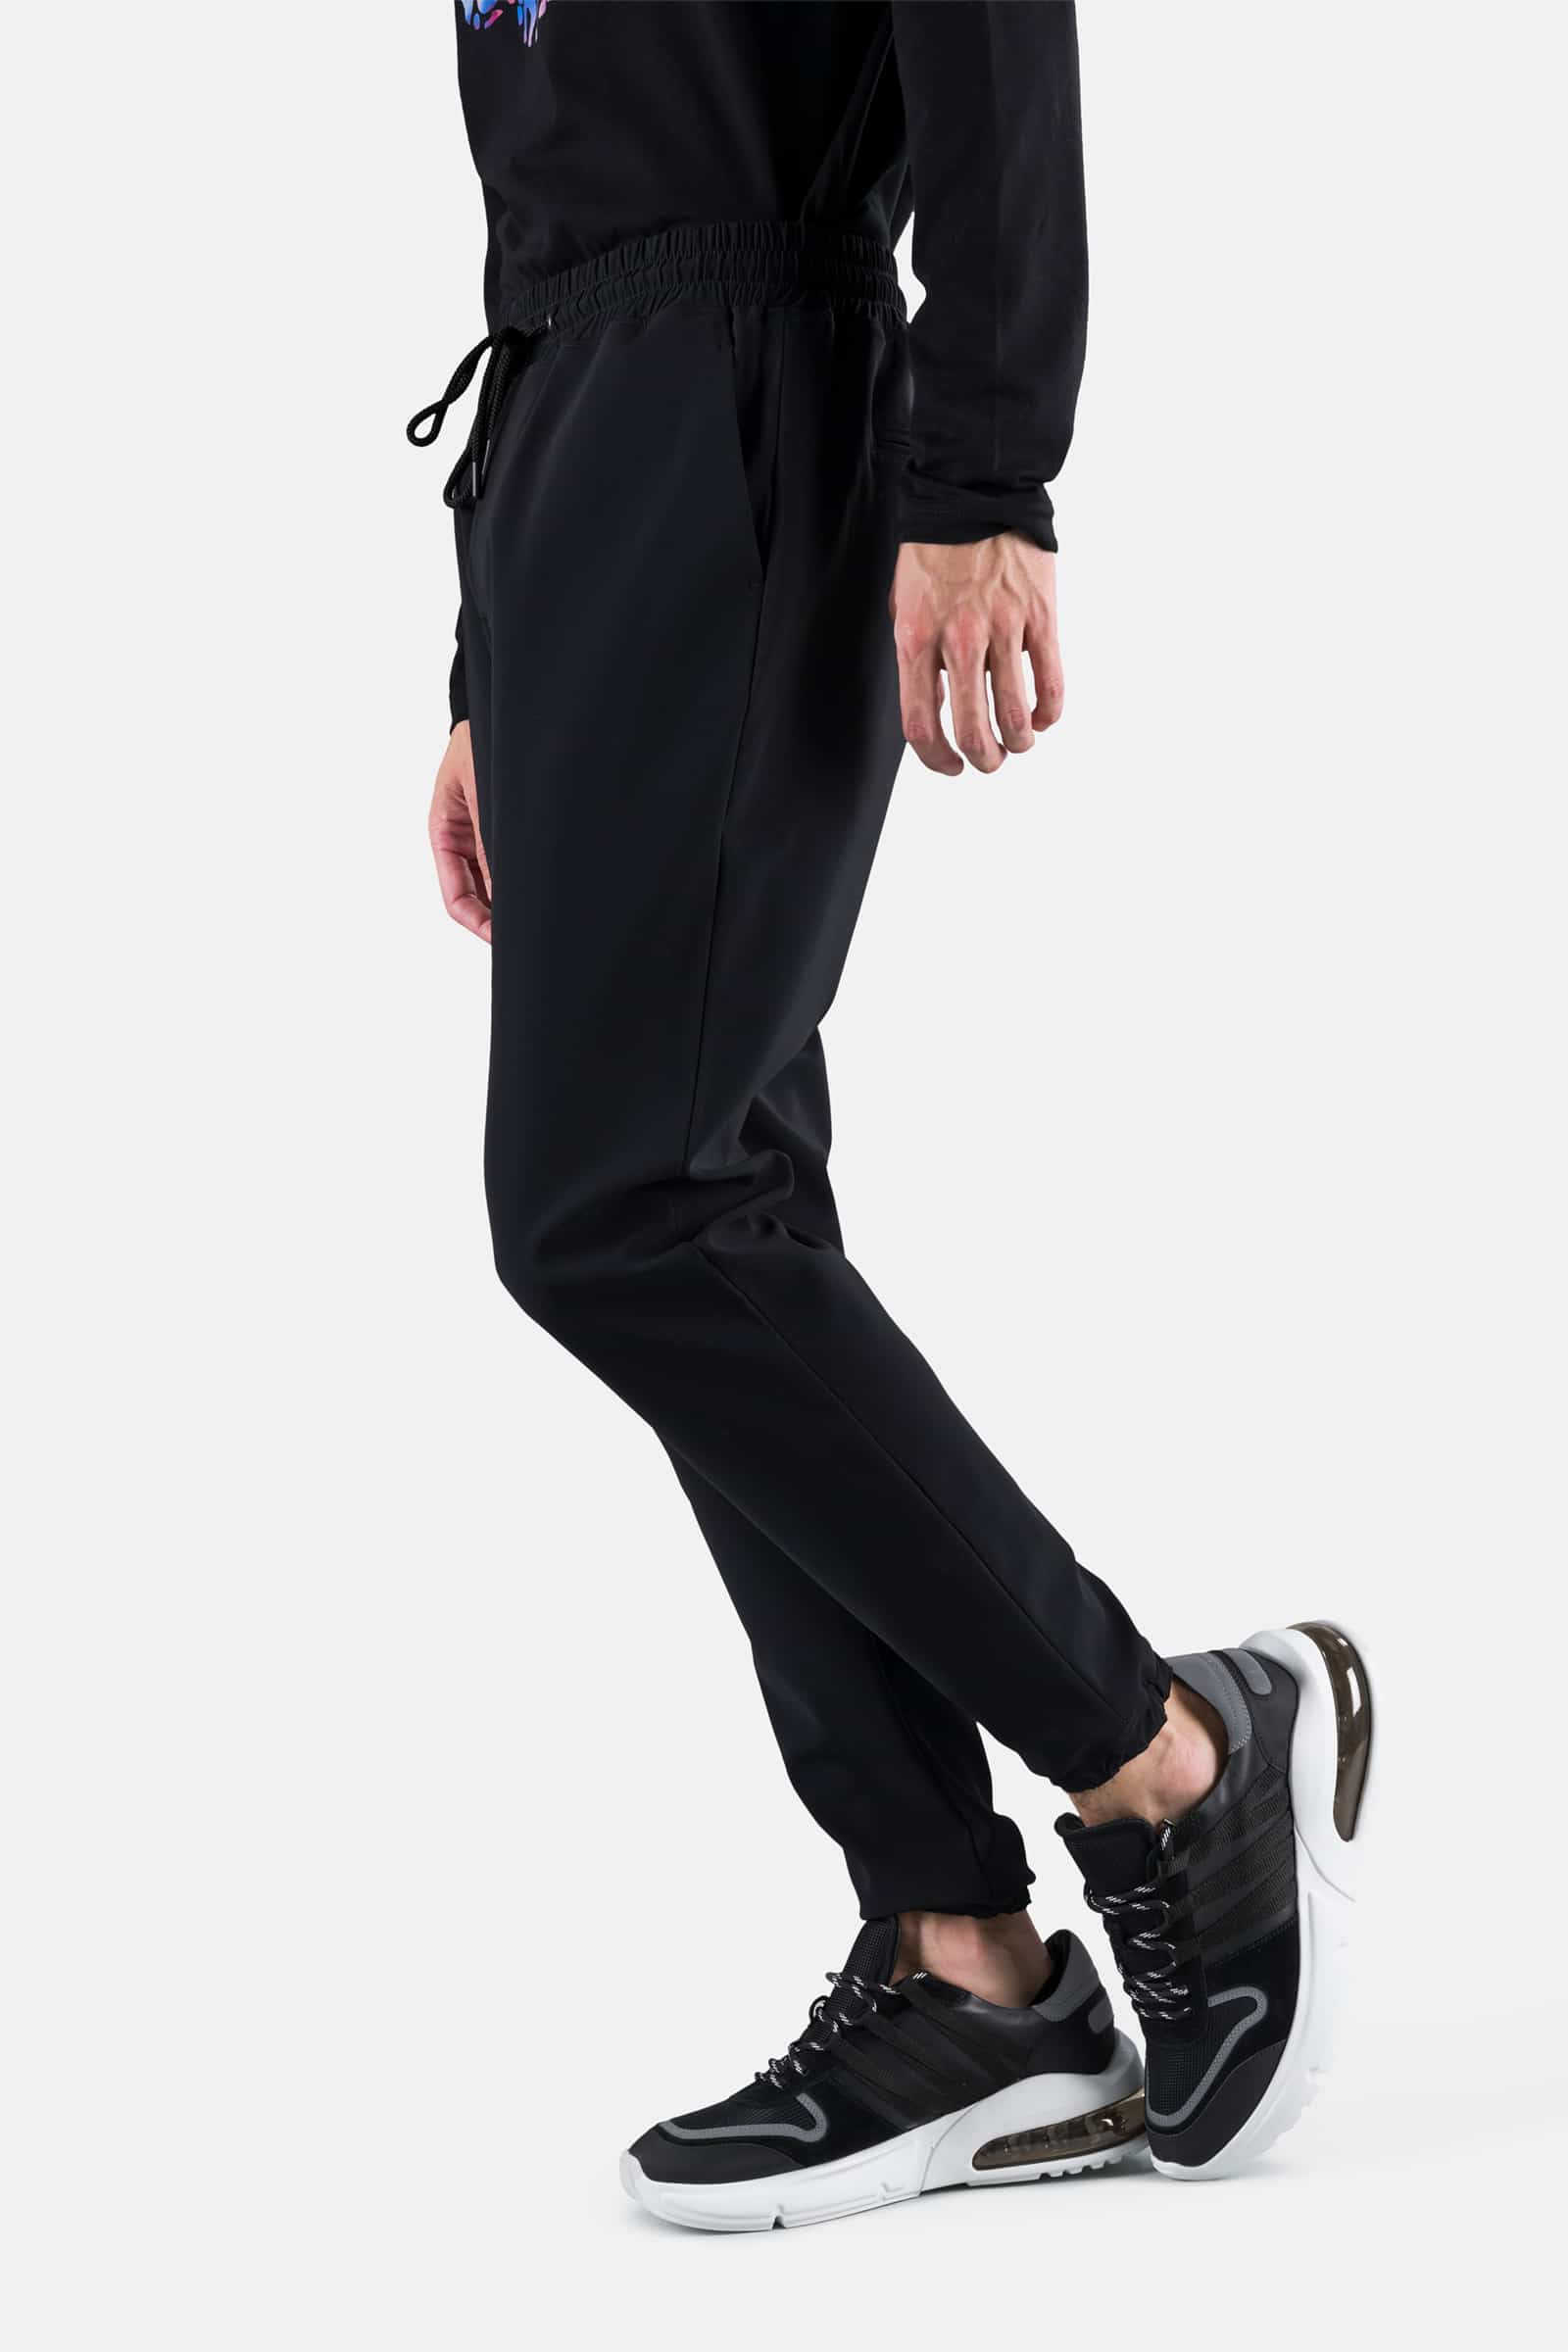 TRACKSUIT PANTS - BLACK - Hydrogen - Luxury Sportwear